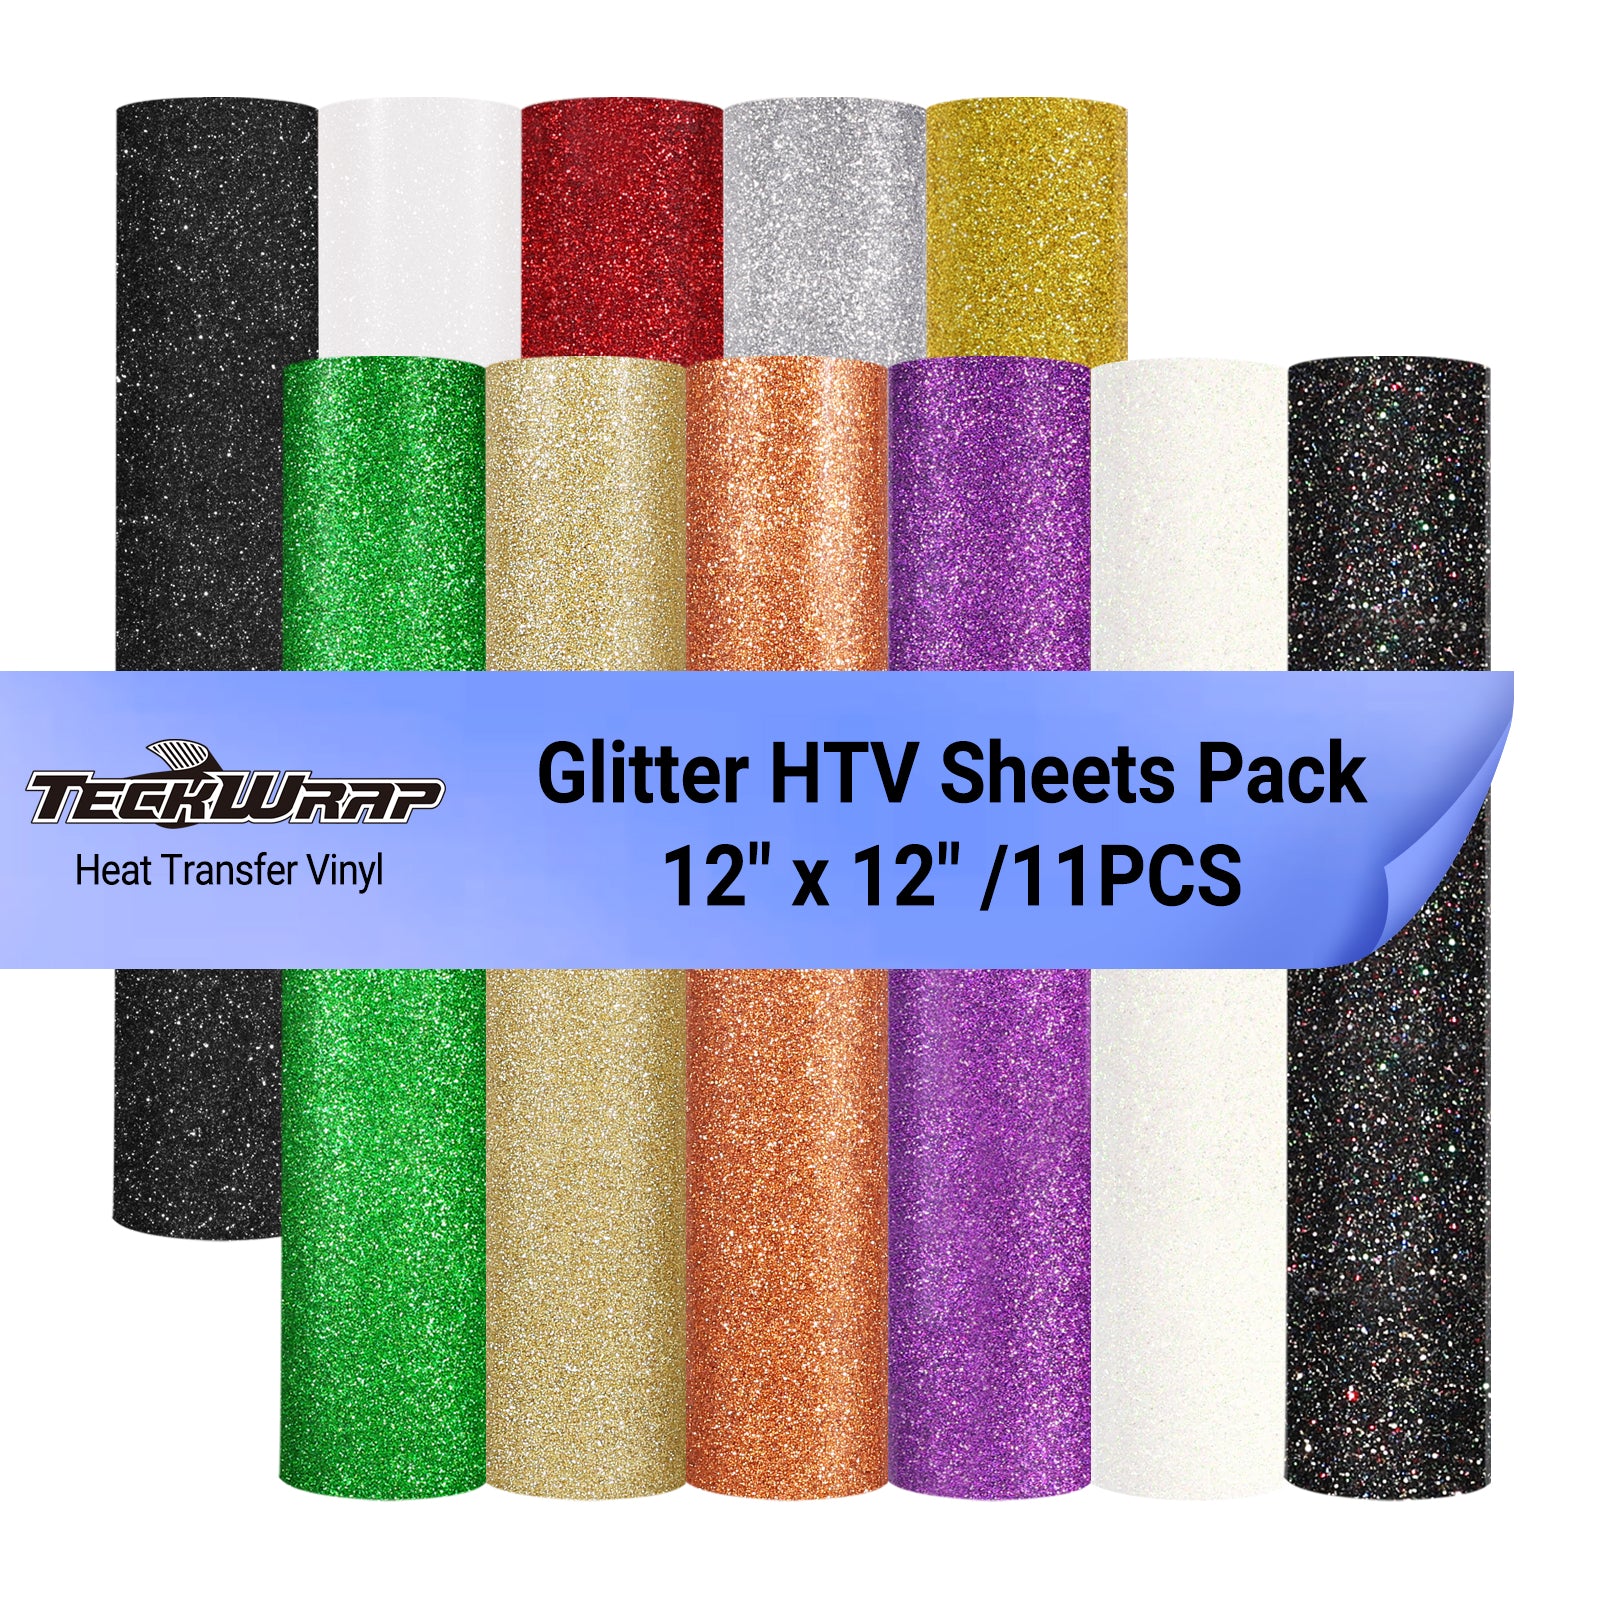 Glitter HTV Sheets Pack